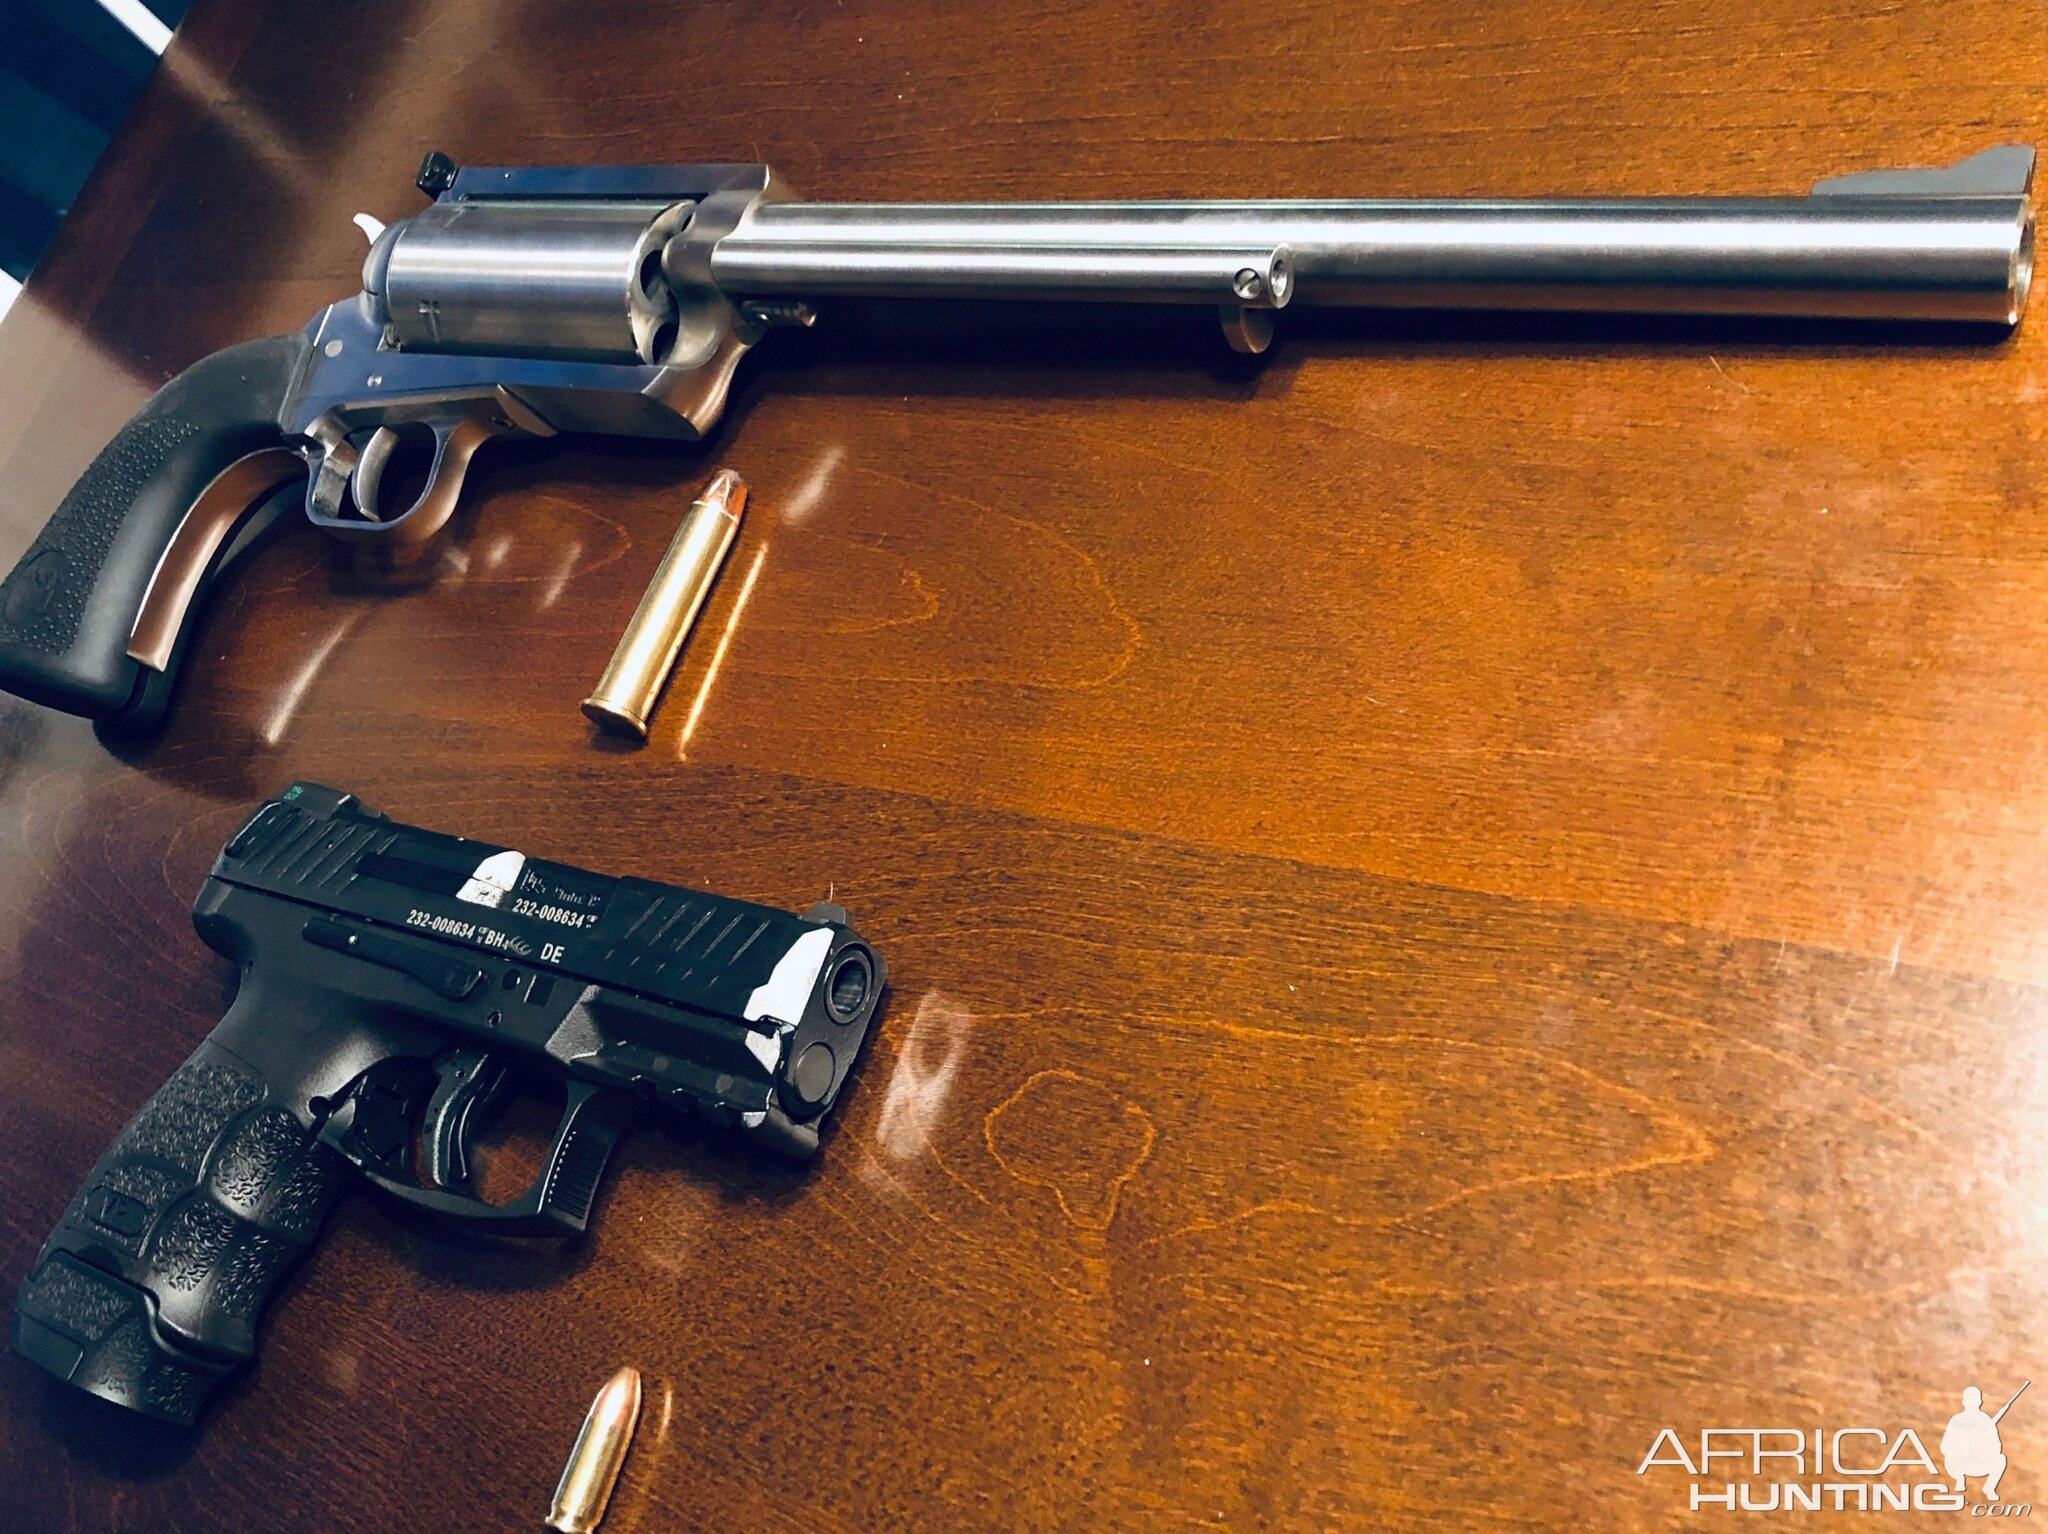 BFR Revolver in 45/70 & Heckler & Koch 9 Pistol